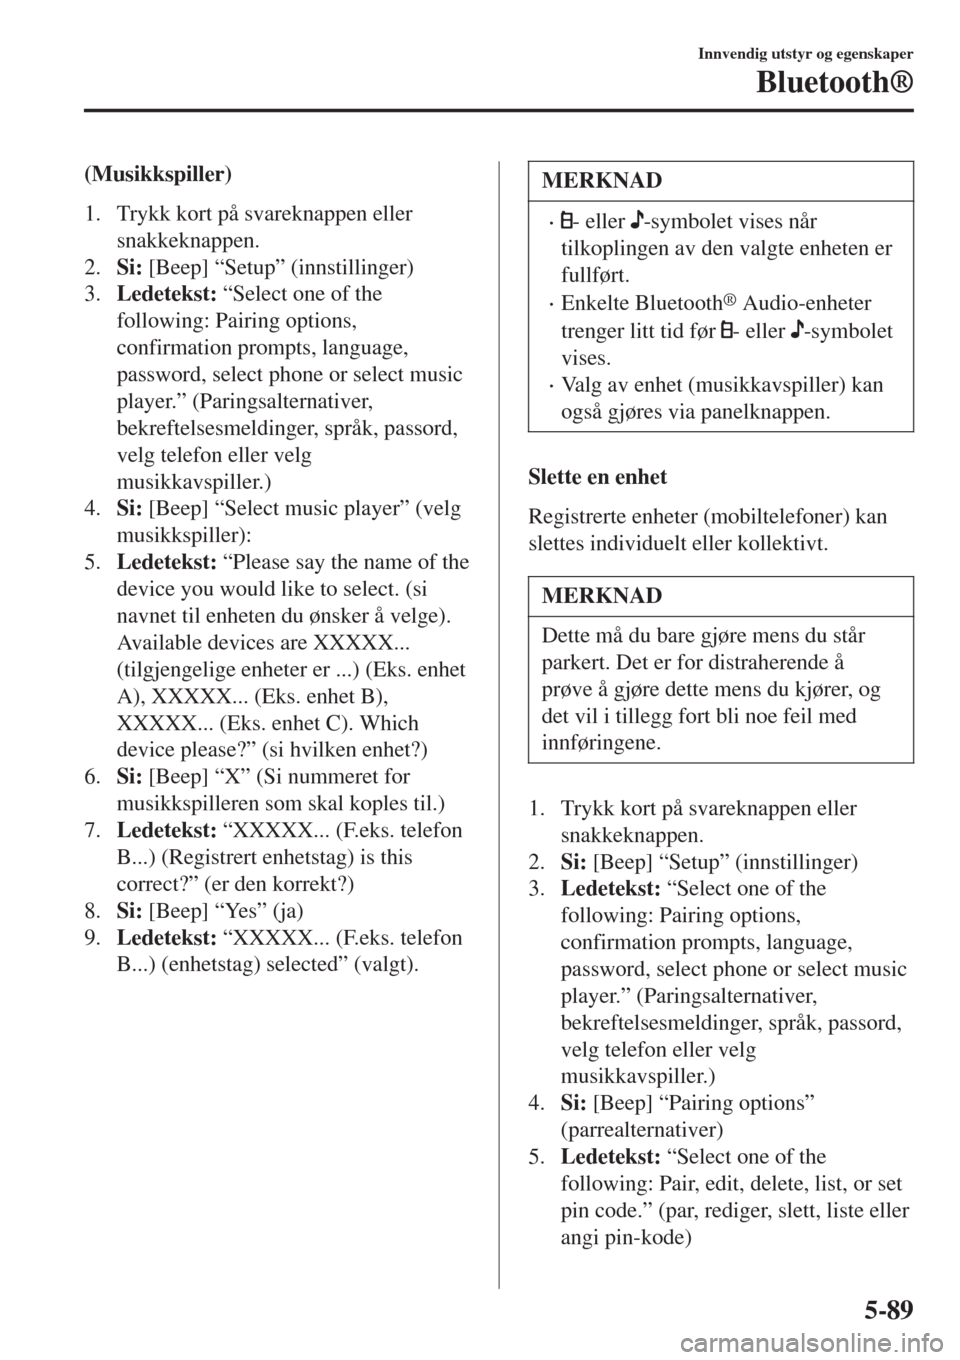 MAZDA MODEL CX-3 2015  Brukerhåndbok (in Norwegian) (Musikkspiller)
1. Trykk kort på svareknappen eller
snakkeknappen.
2.Si: [Beep] “Setup” (innstillinger)
3.Ledetekst: “Select one of the
following: Pairing options,
confirmation prompts, languag